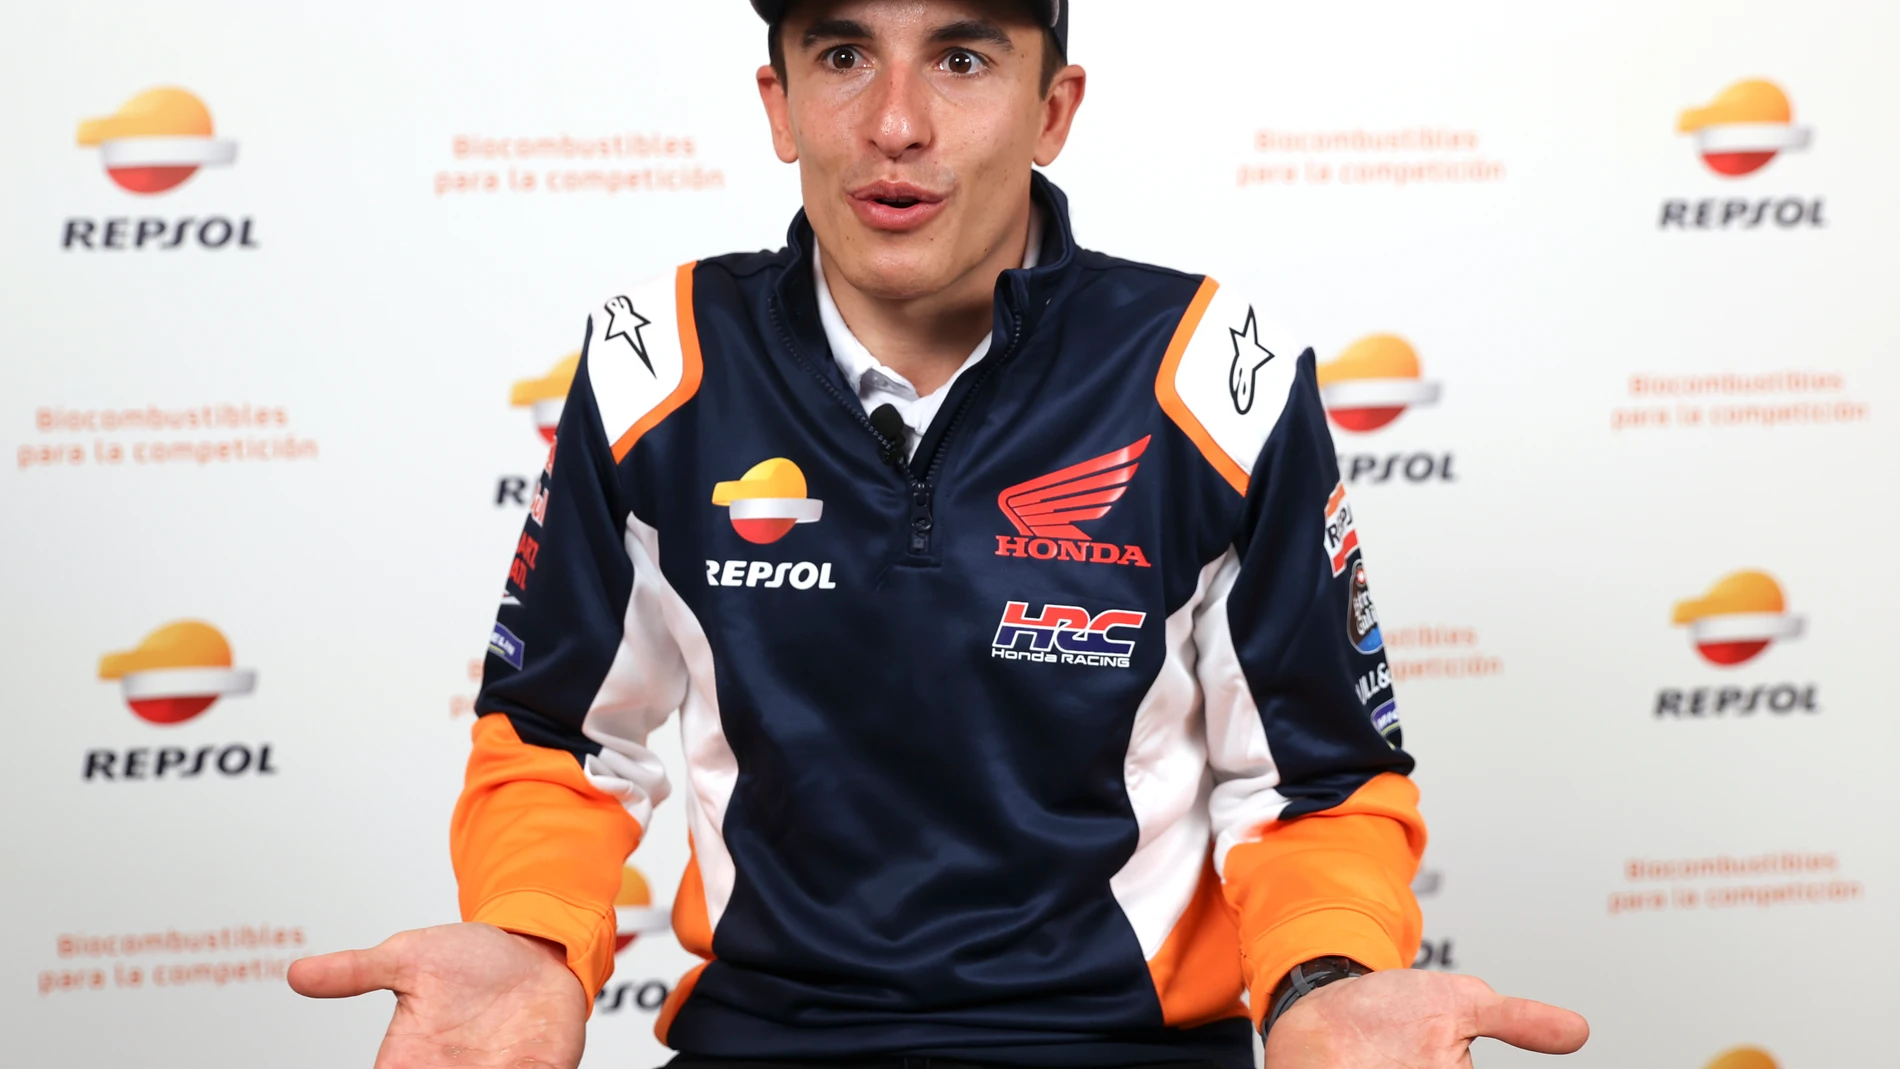 Marc Márquez, en el acto del Repsol Honda Team previo al arranque de la temporada de MotoGP 2022